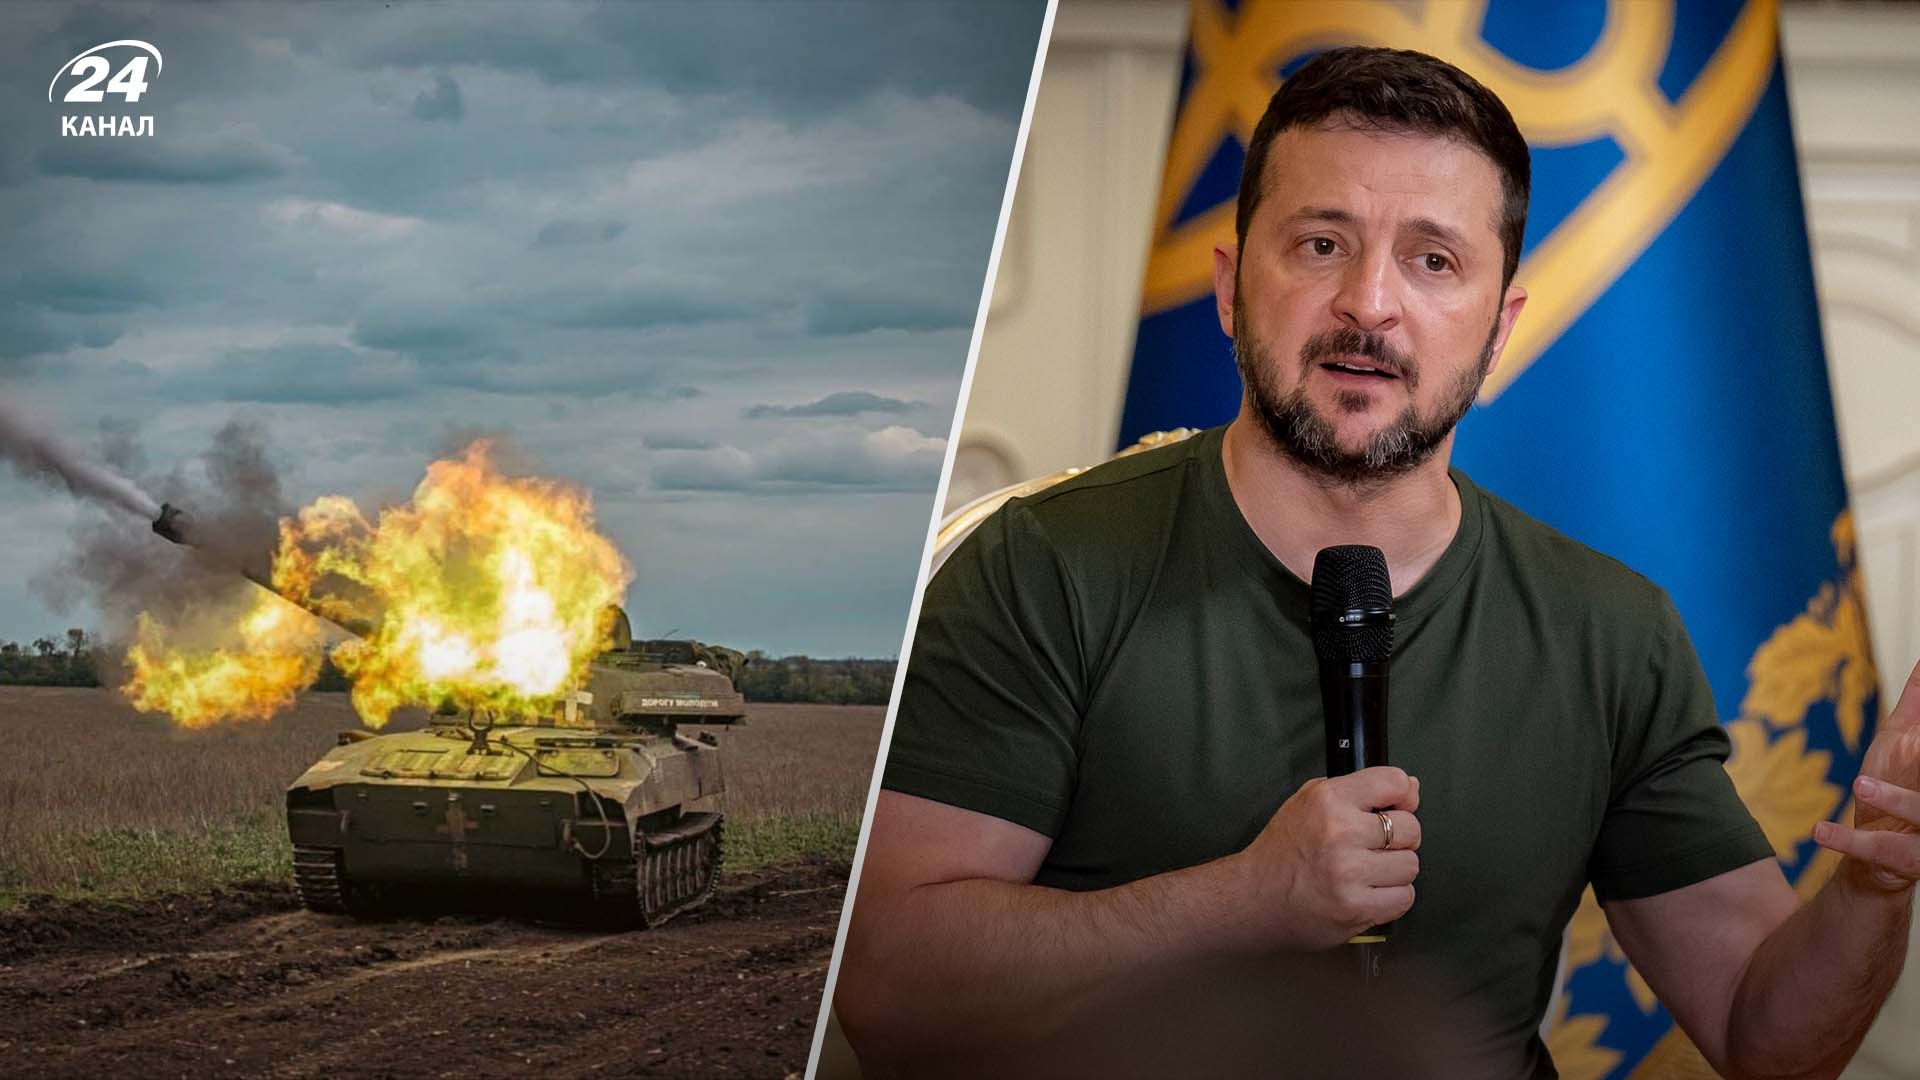 Зеленский рассказал, какой украинский город является главной целью для российских оккупационных войск - 24 Канал